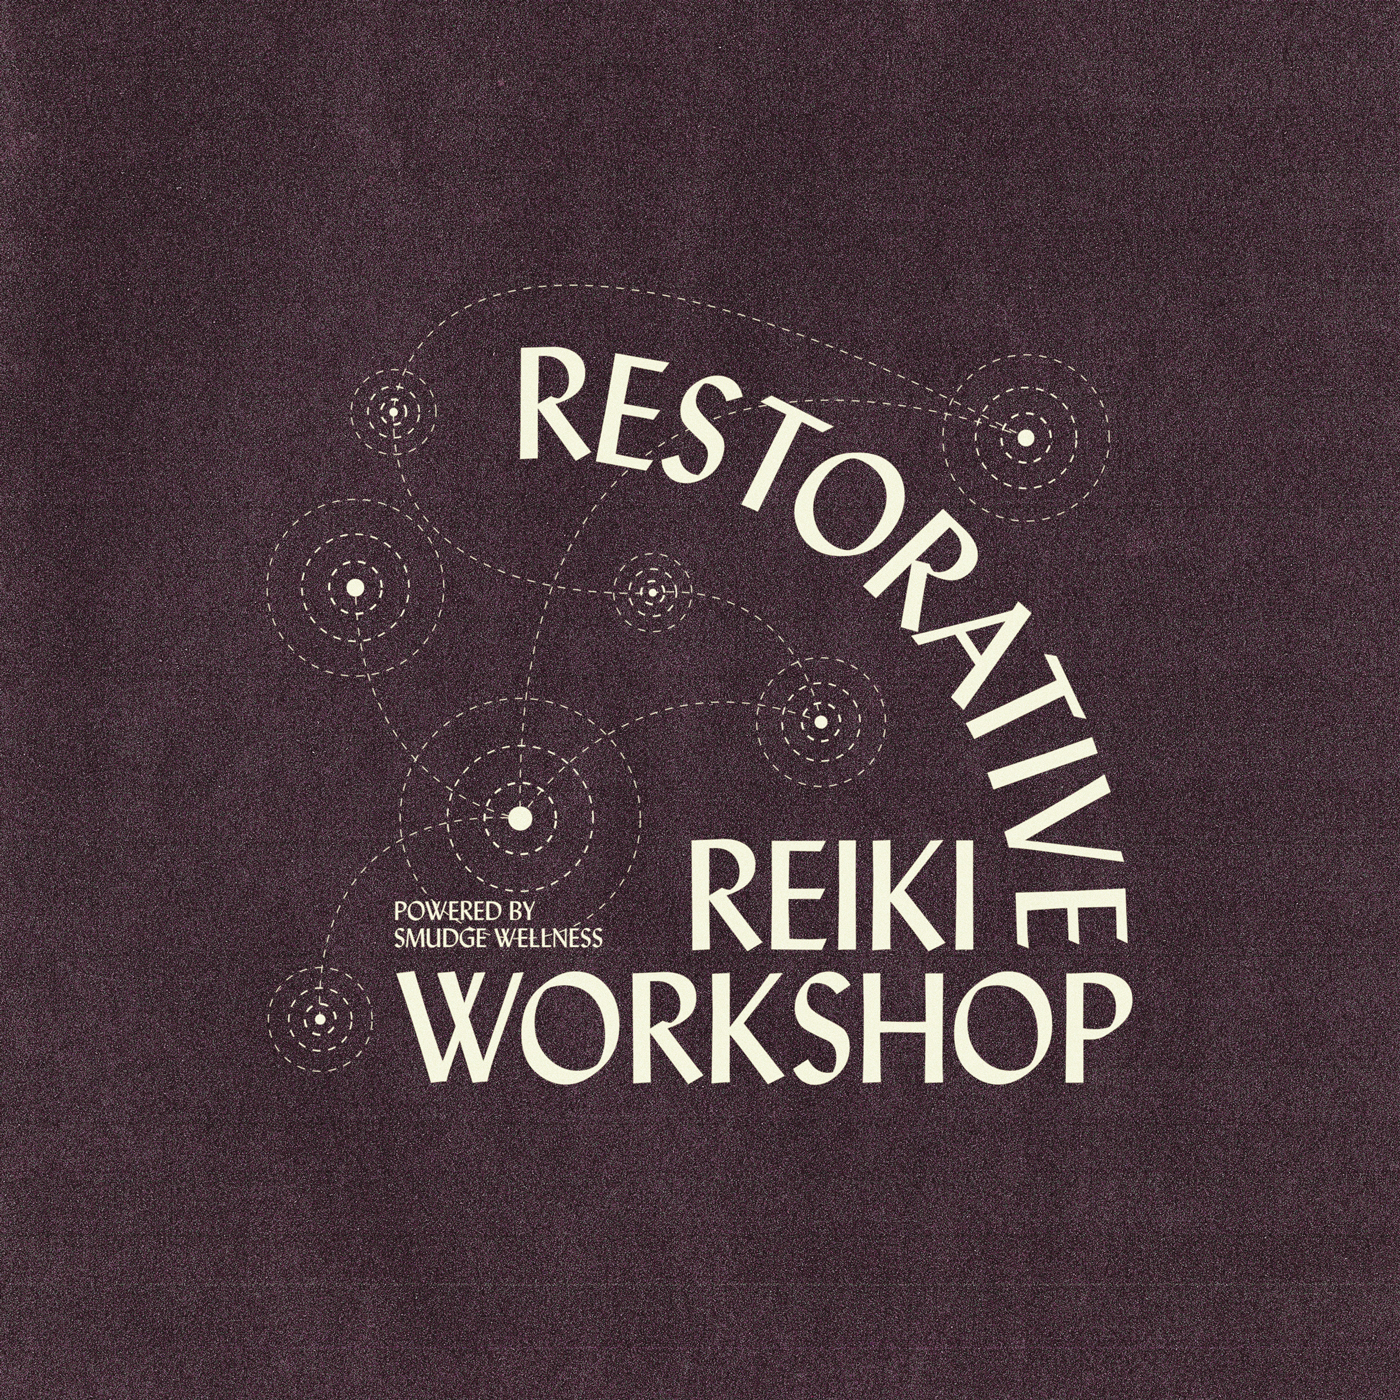 "Restorative Reiki Workshop" written in white on a purple surface.